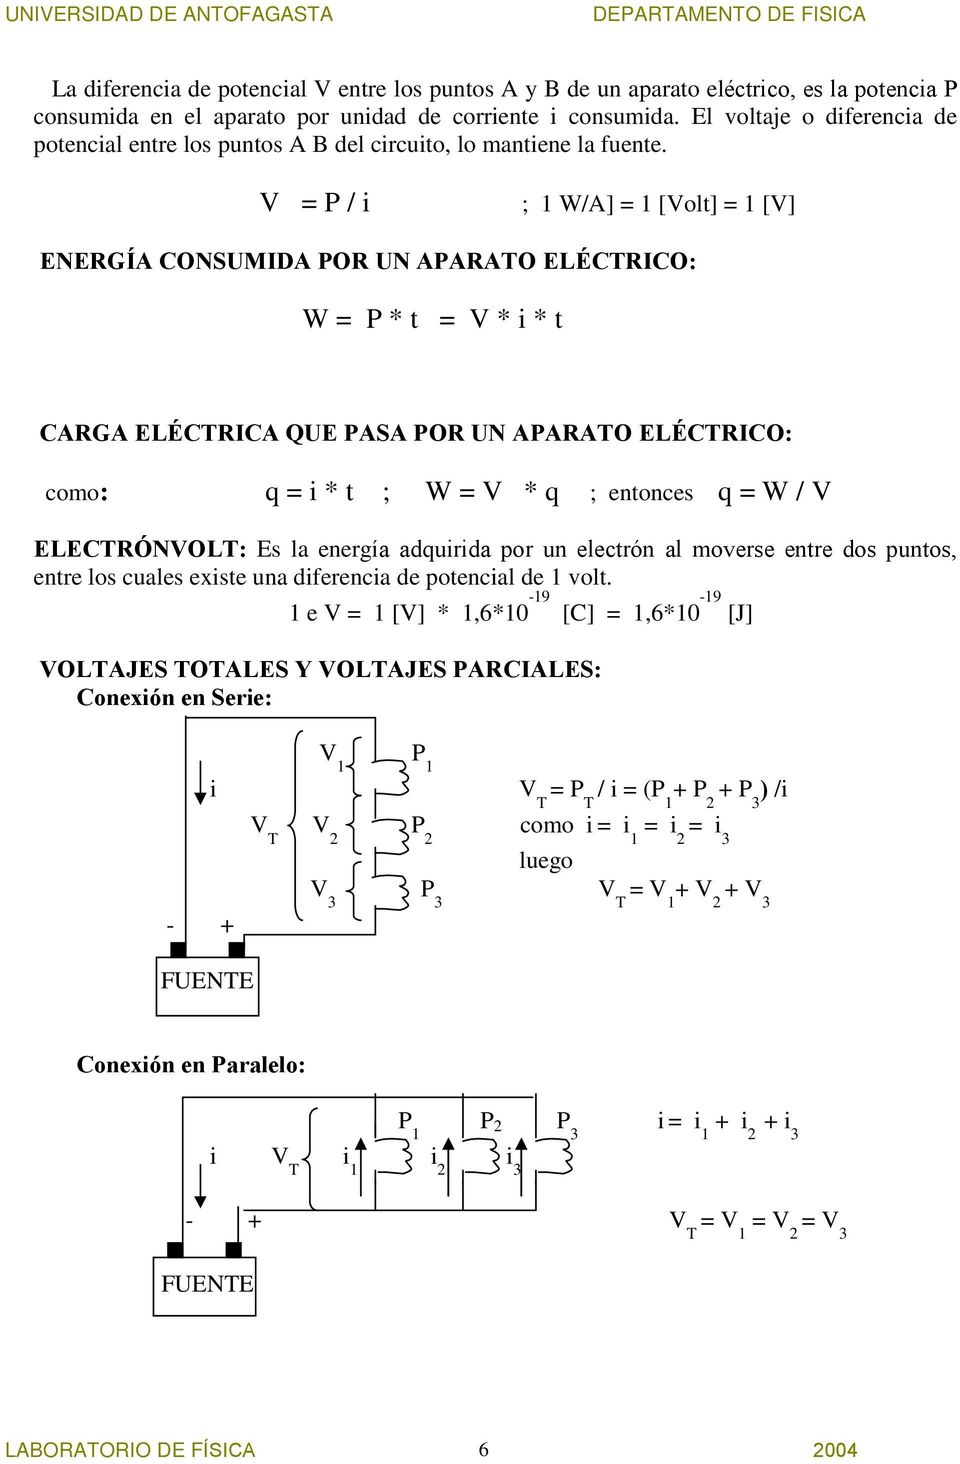 V = P / ; 1 W/A] = 1 [Volt] = 1 [V] ENERGÍA CONSUMIDA POR UN APARATO ELÉCTRICO: W = P * t = V * * t CARGA ELÉCTRICA QUE PASA POR UN APARATO ELÉCTRICO: como: q = * t ; W = V * q ; entonces q = W / V